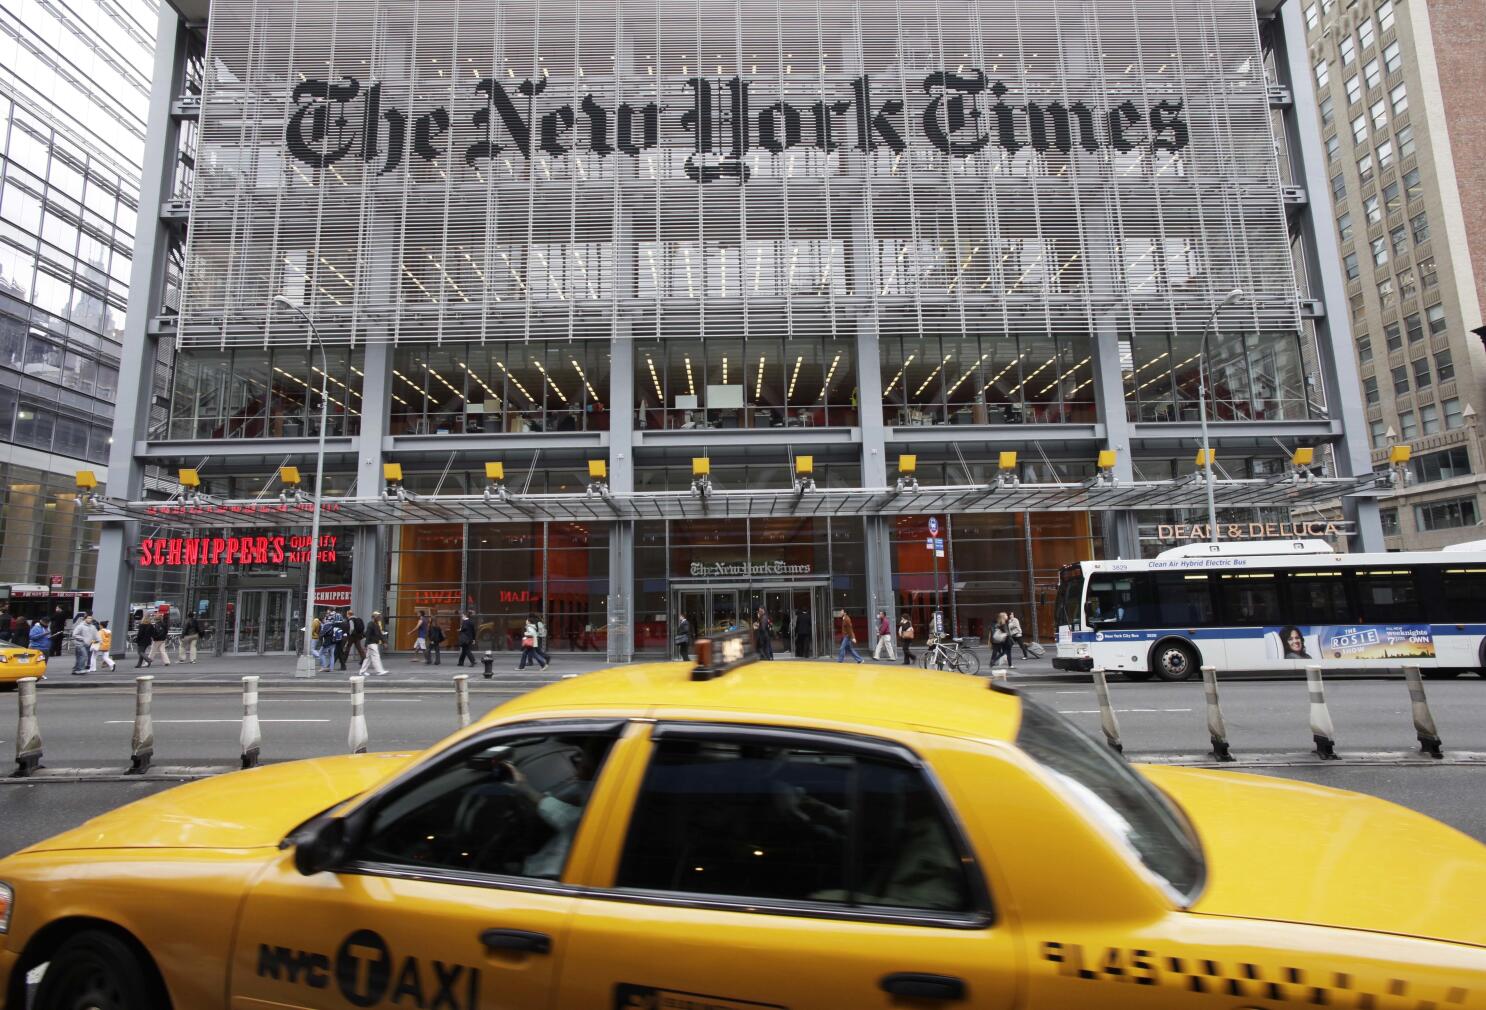 New York Times compra Wordle para expandir seus negócios na área de jogos